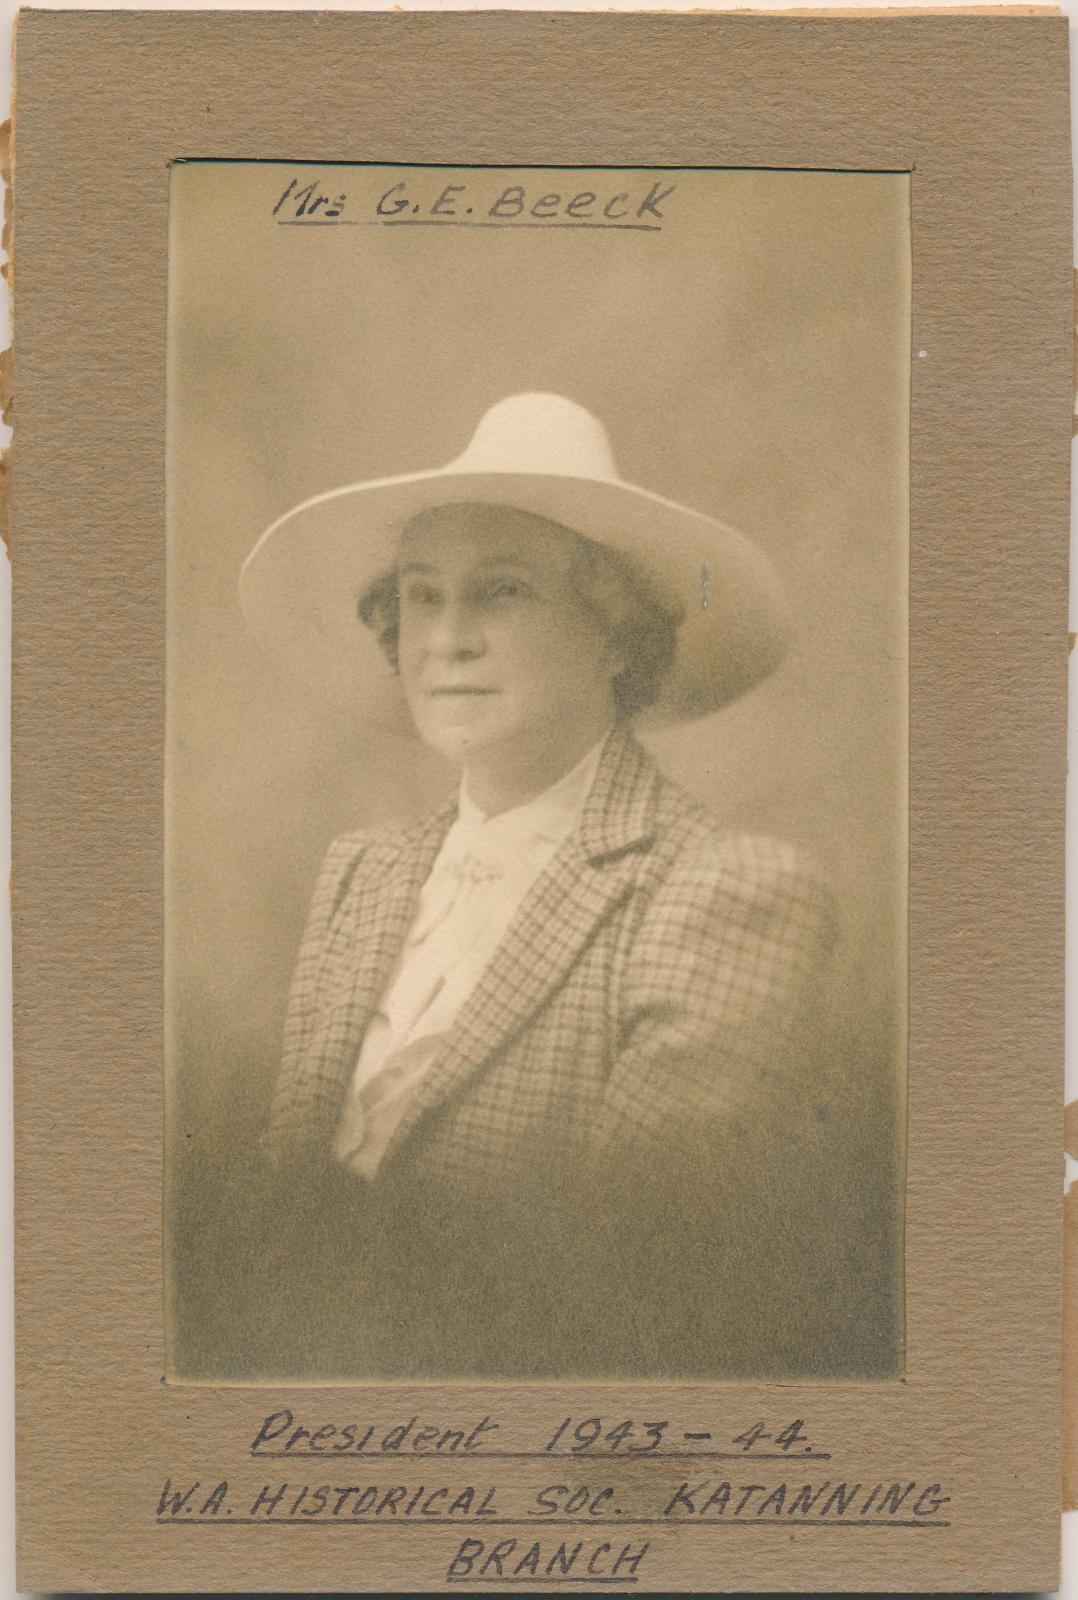 Mrs G.E. Beeck